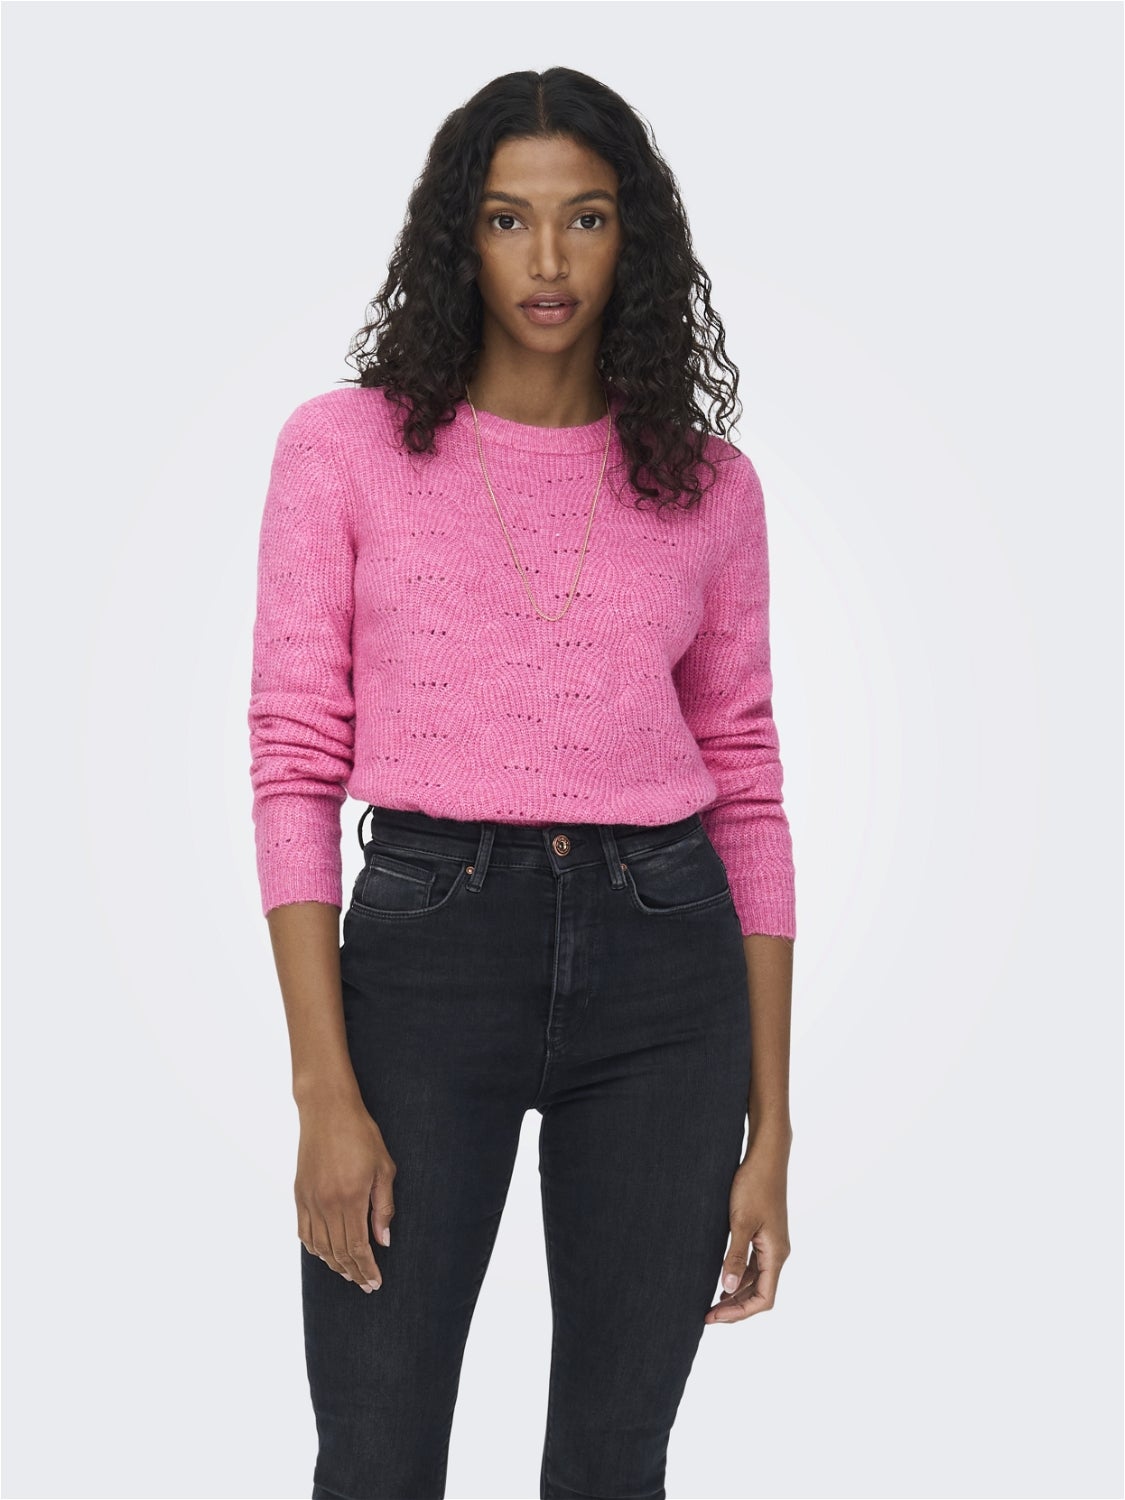 Strickpollover Pink Damen Kleidung Hoodies & Pullover Sweater Strickpullover Missguided Strickpullover 